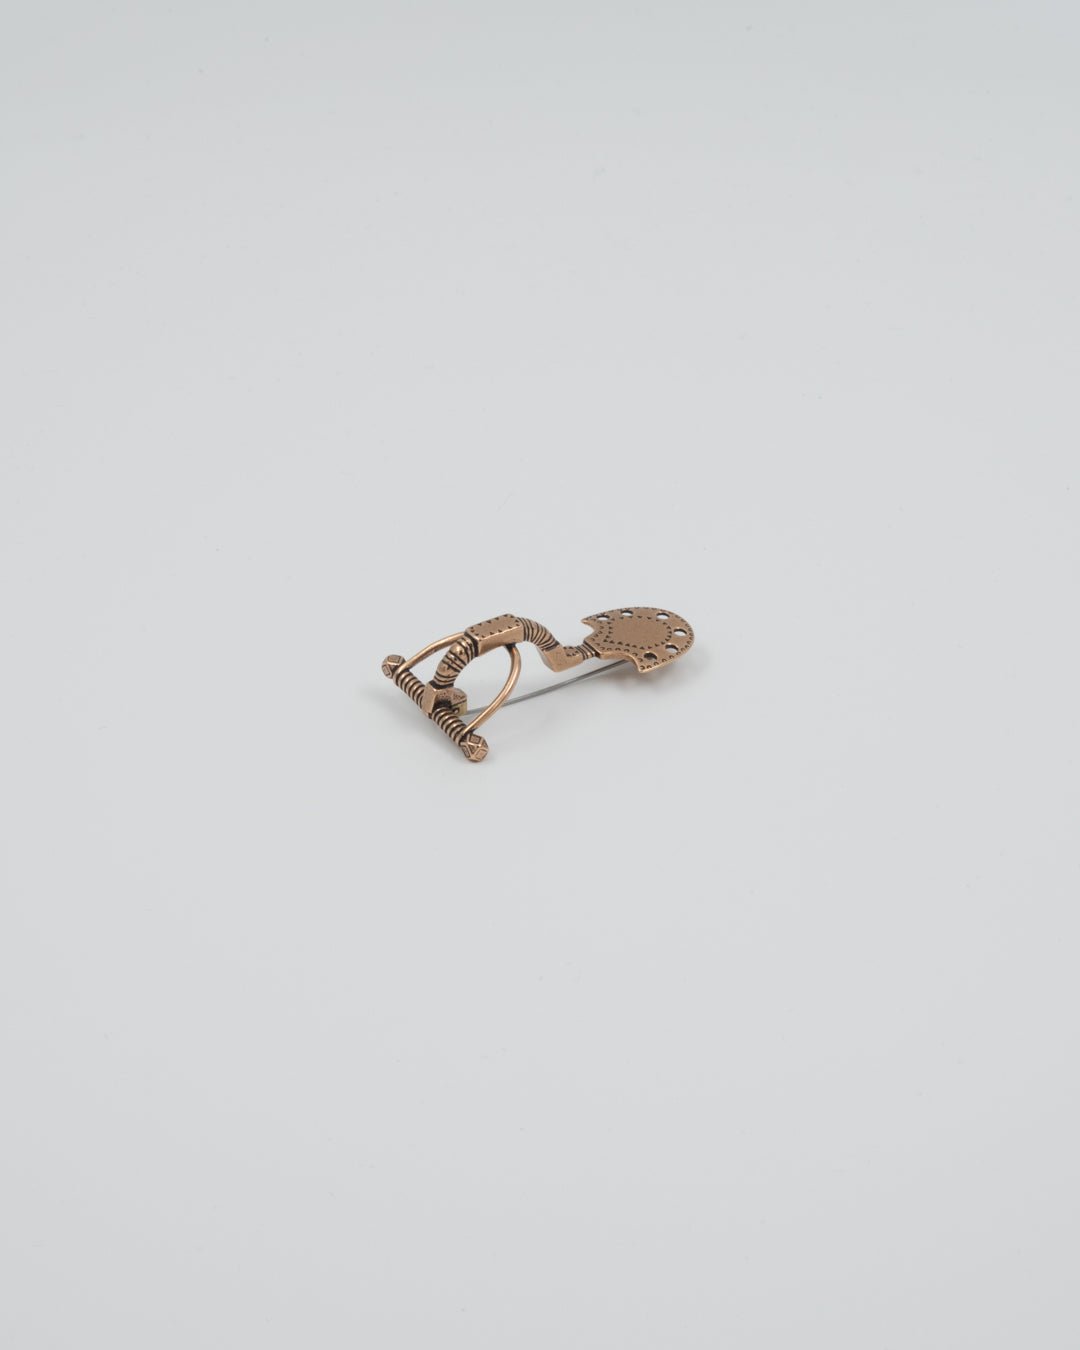 Kept brooch from Urjala Nuutajärvi, bronze